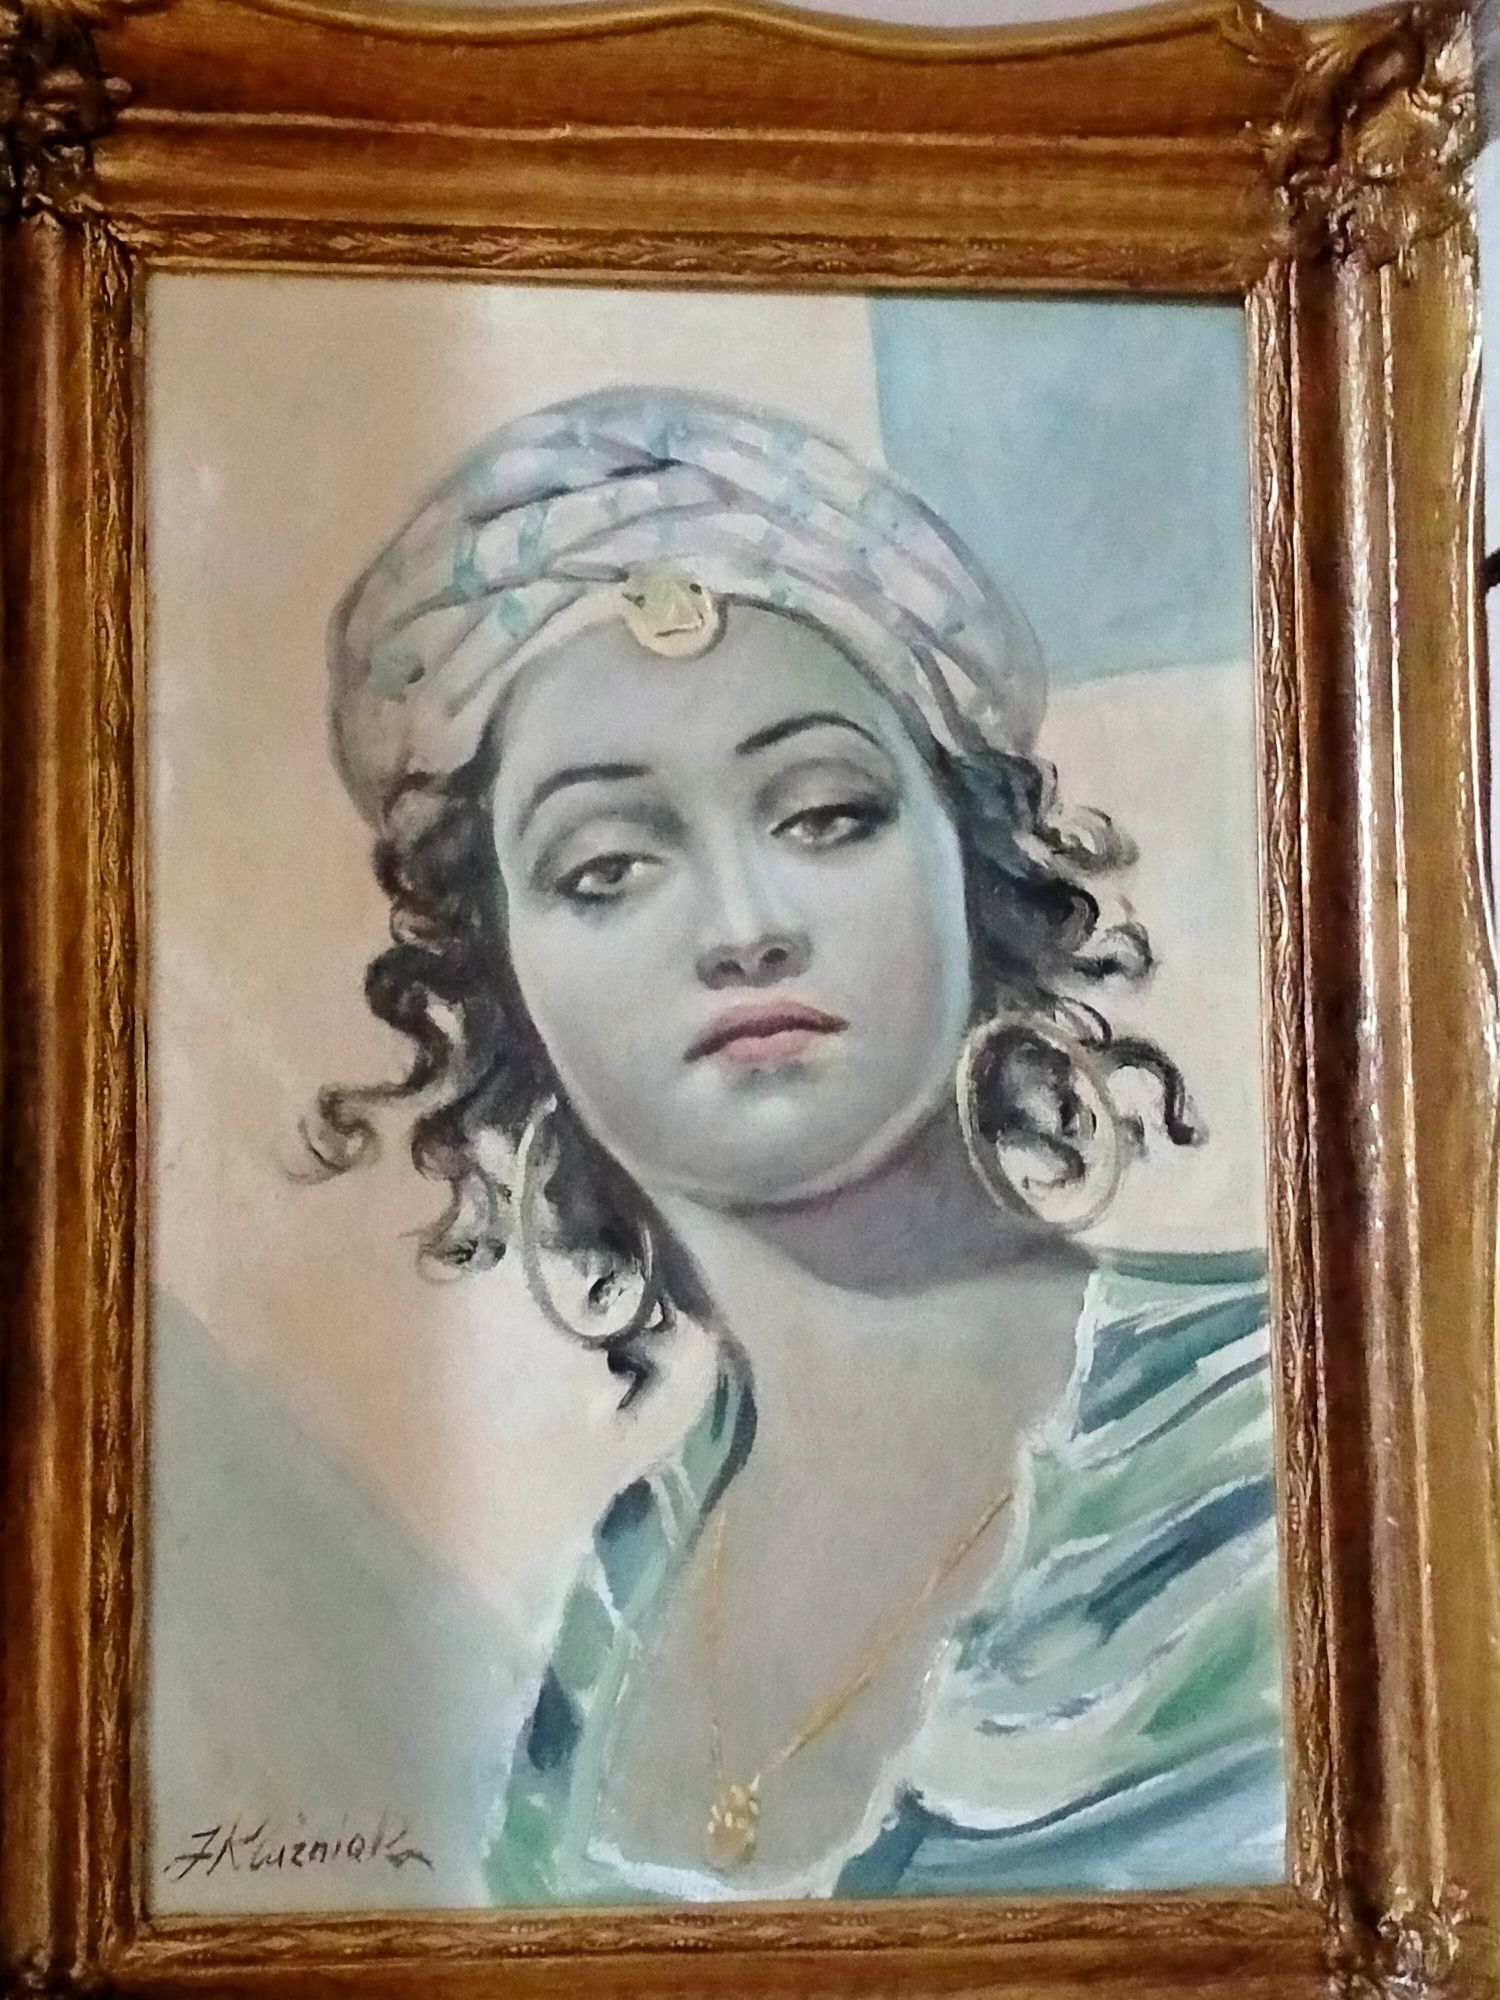 Olejny obraz J.Kluzniaka w ramie